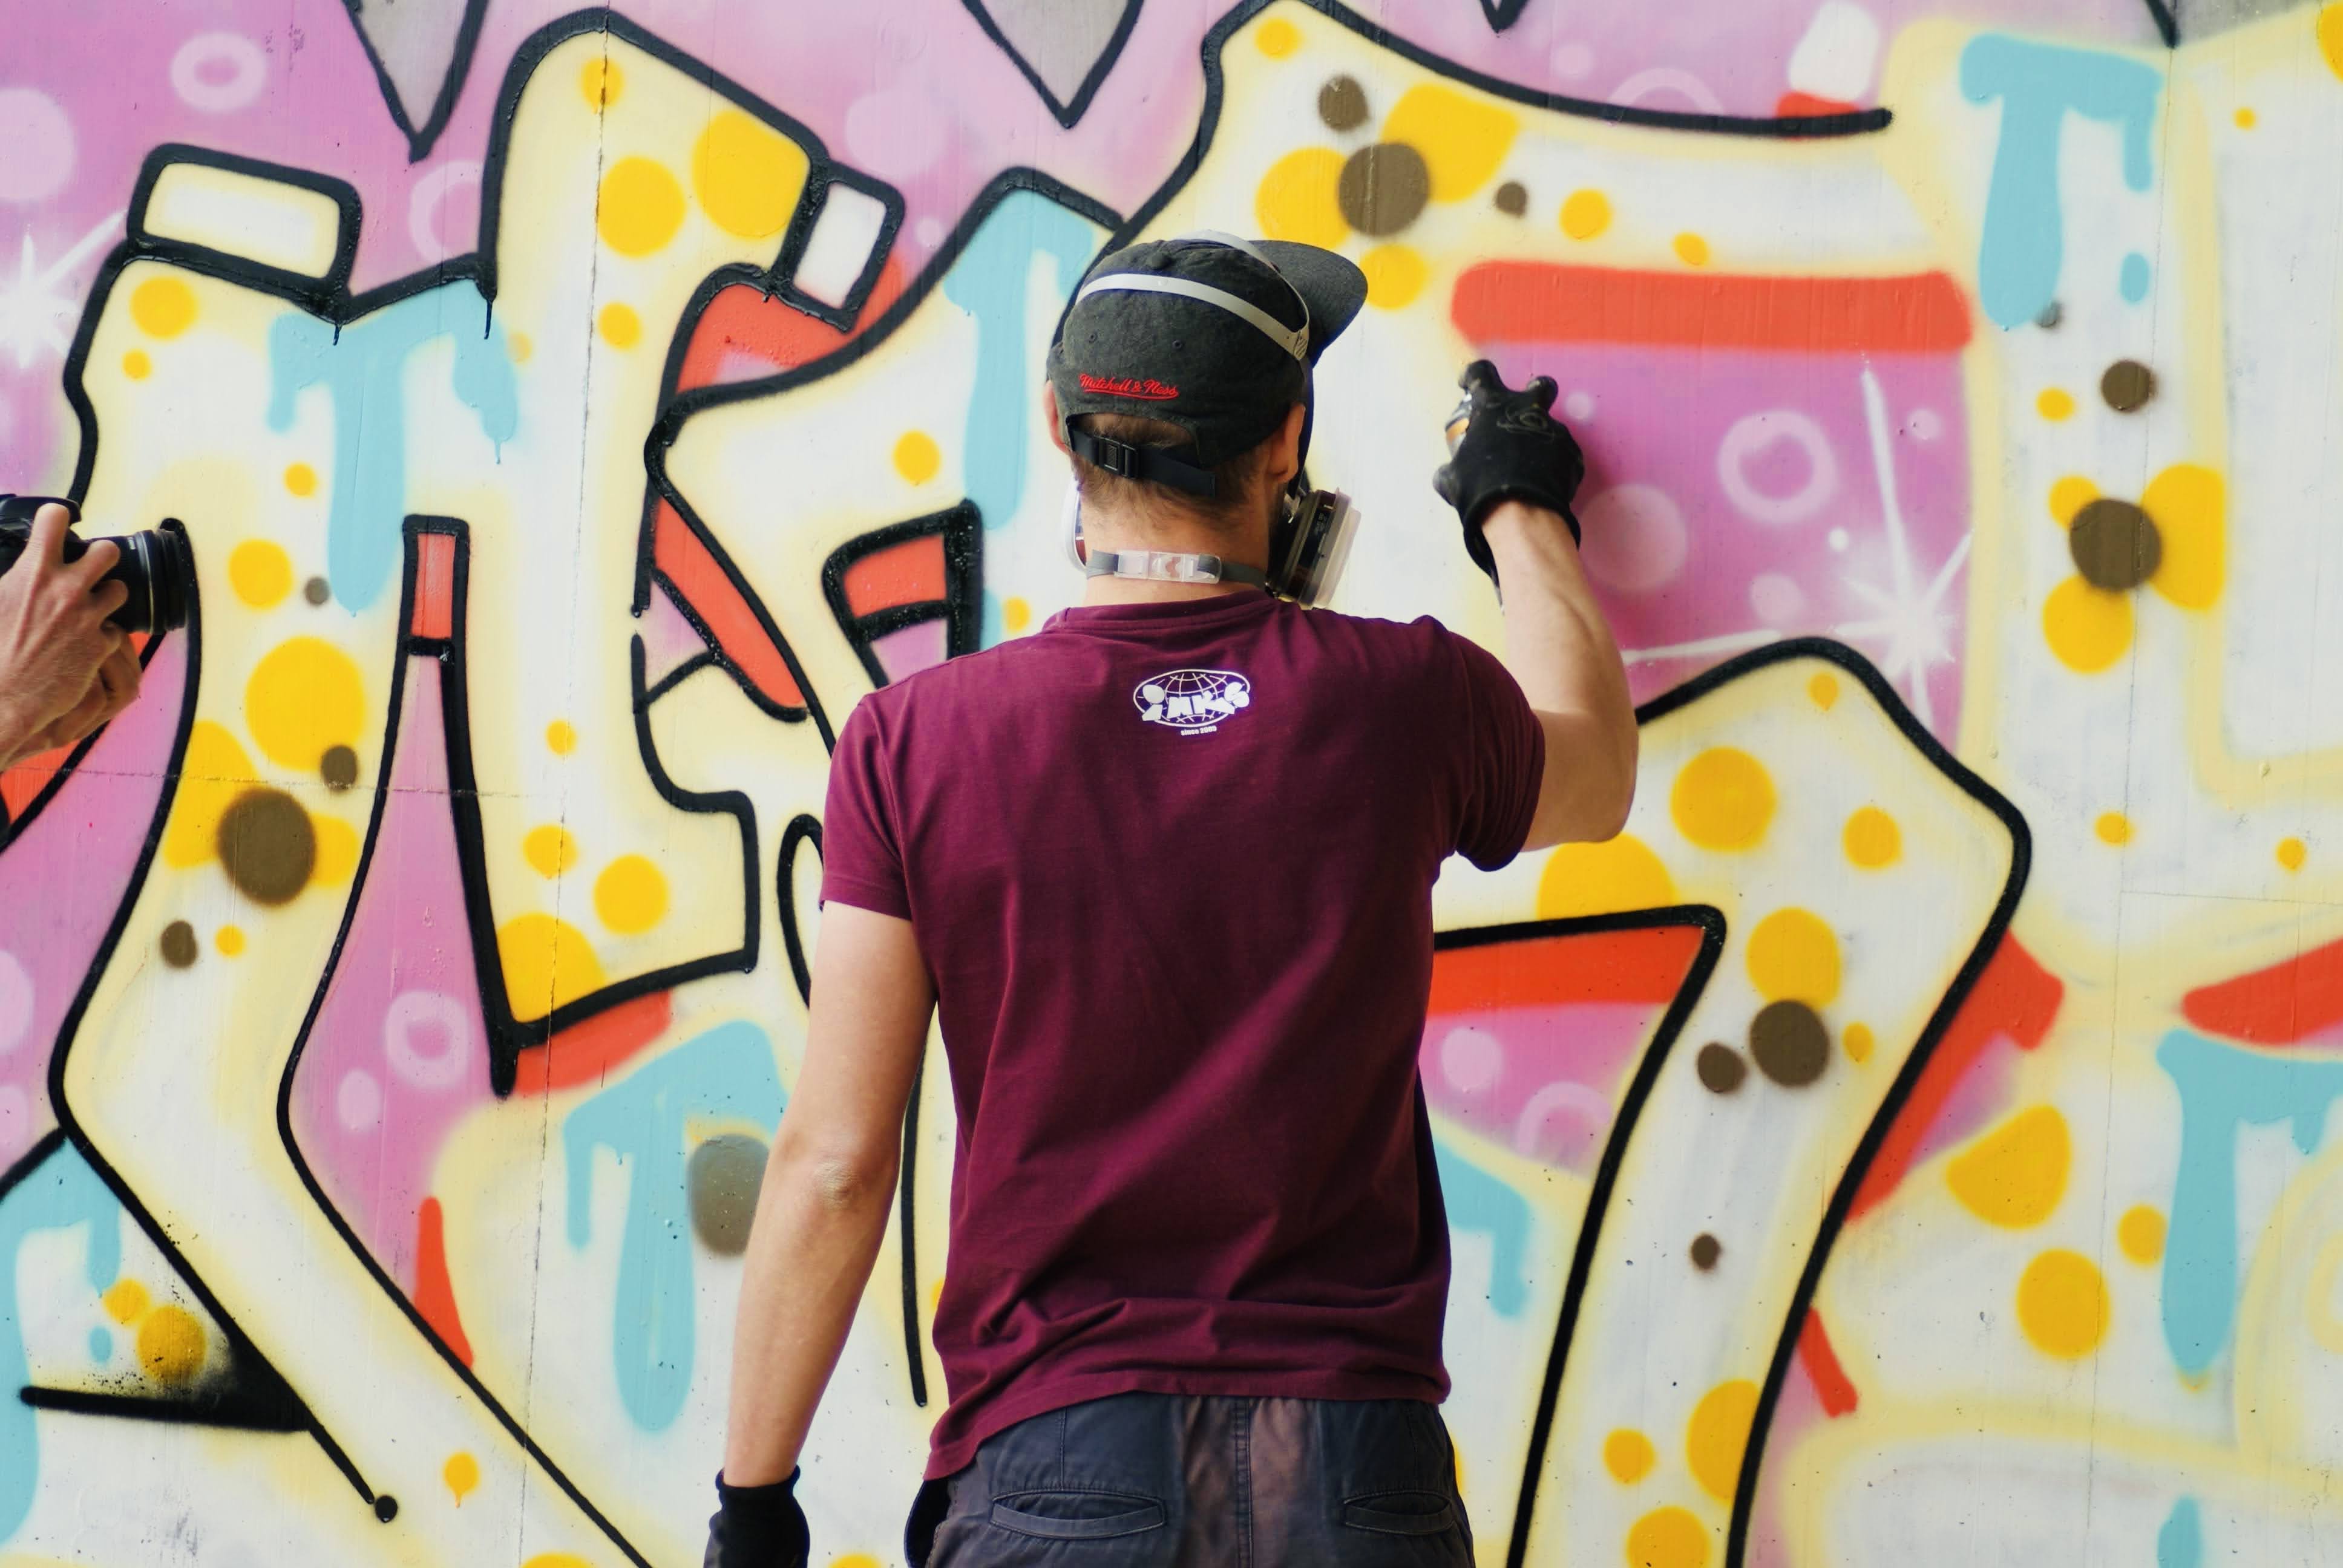 Graffiti an der HWS Wand. Ein Graffiti Künstler in der Mitte des Bildes mit dem Rücken zur Kamera im dunkelroten Shirt und Baseballkappe sprüht mit frischen Pastellfarben einen Schriftzug an die Mauer.